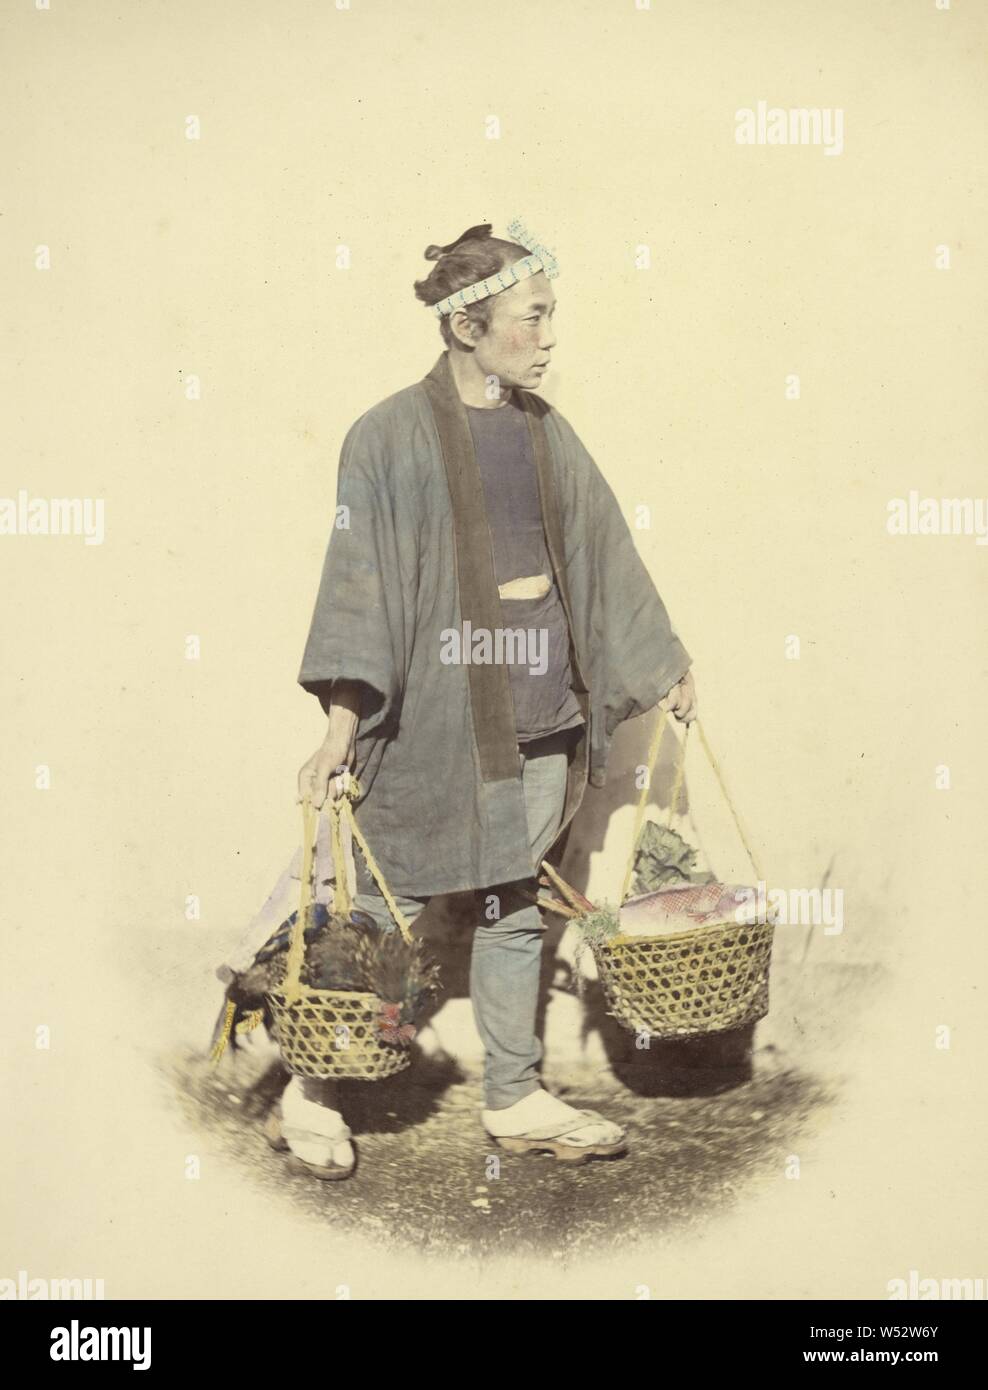 Cuoco giapponese, di ritorno dal mercato, Felice Beato (inglese, nato in Italia, 1832 - 1909), Giappone, 1866 - 1867, colorate a mano albume silver stampa, 26.5 x 20.2 cm (10 7/16 x 7 15/16 in Foto Stock